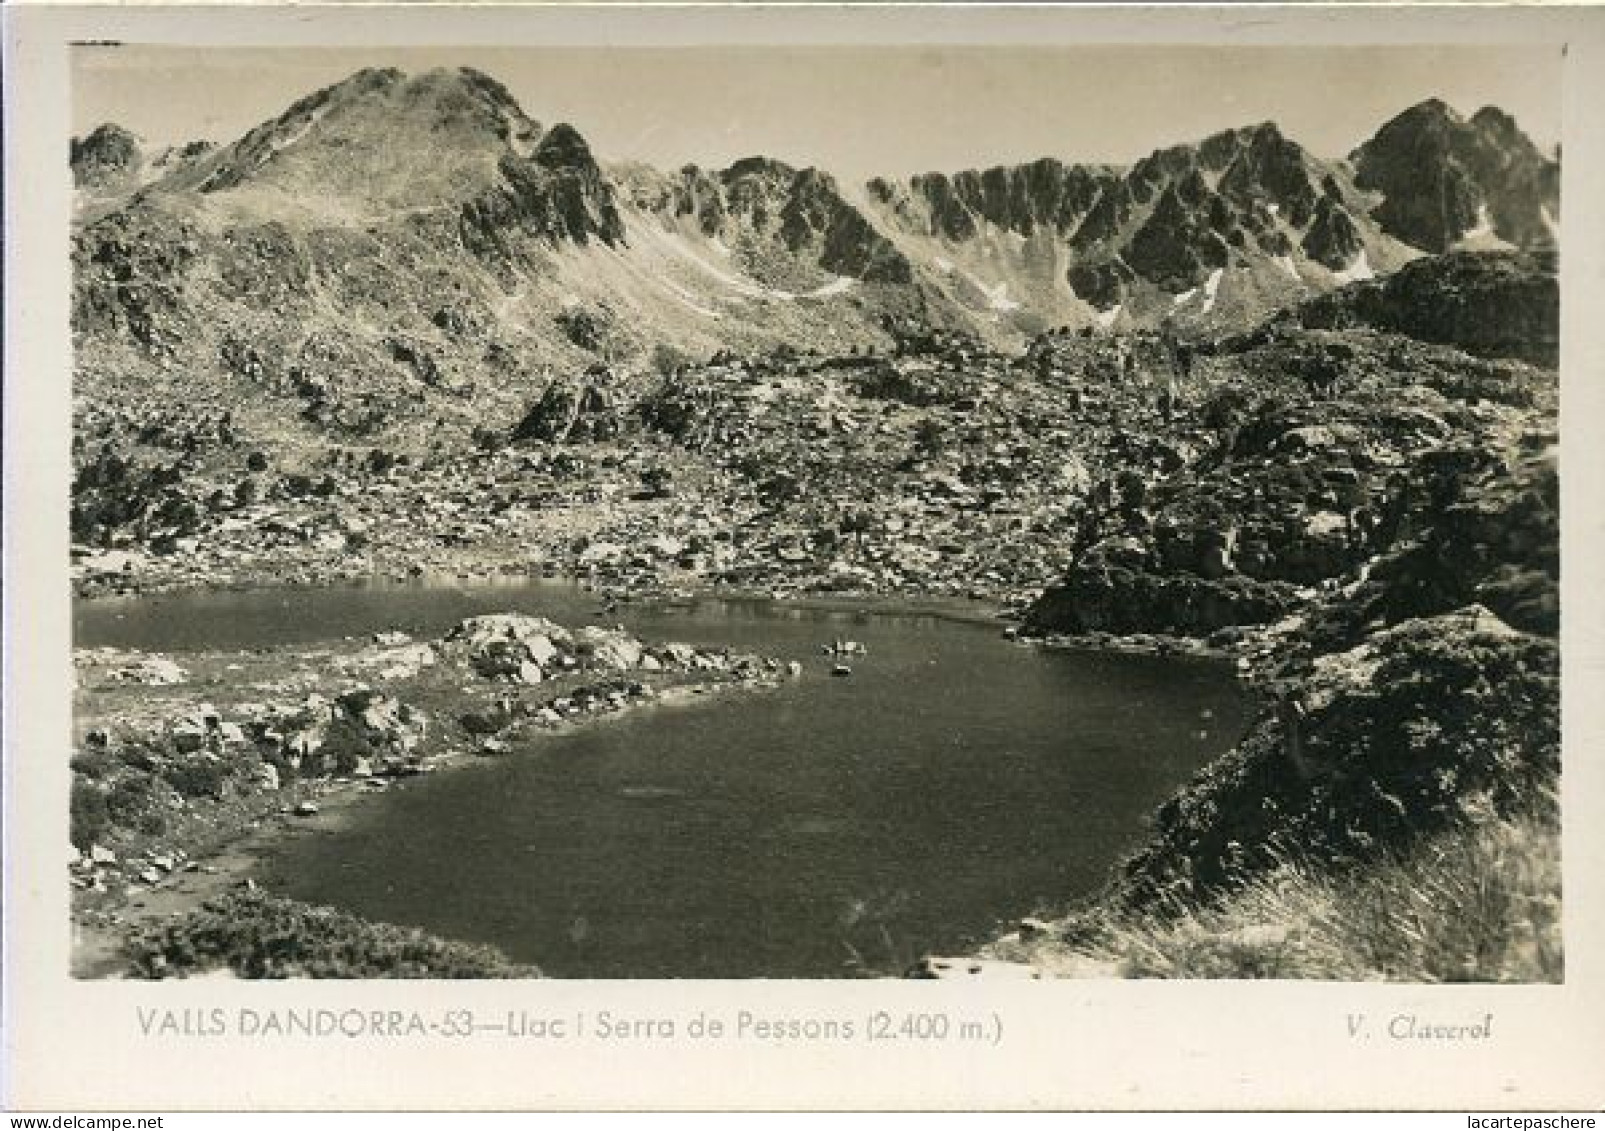 X127525 ANDORRE ANDORRA VALLS D' ANDORRA LLAC I SERRA DE PESSONS 2400 M. - Andorra